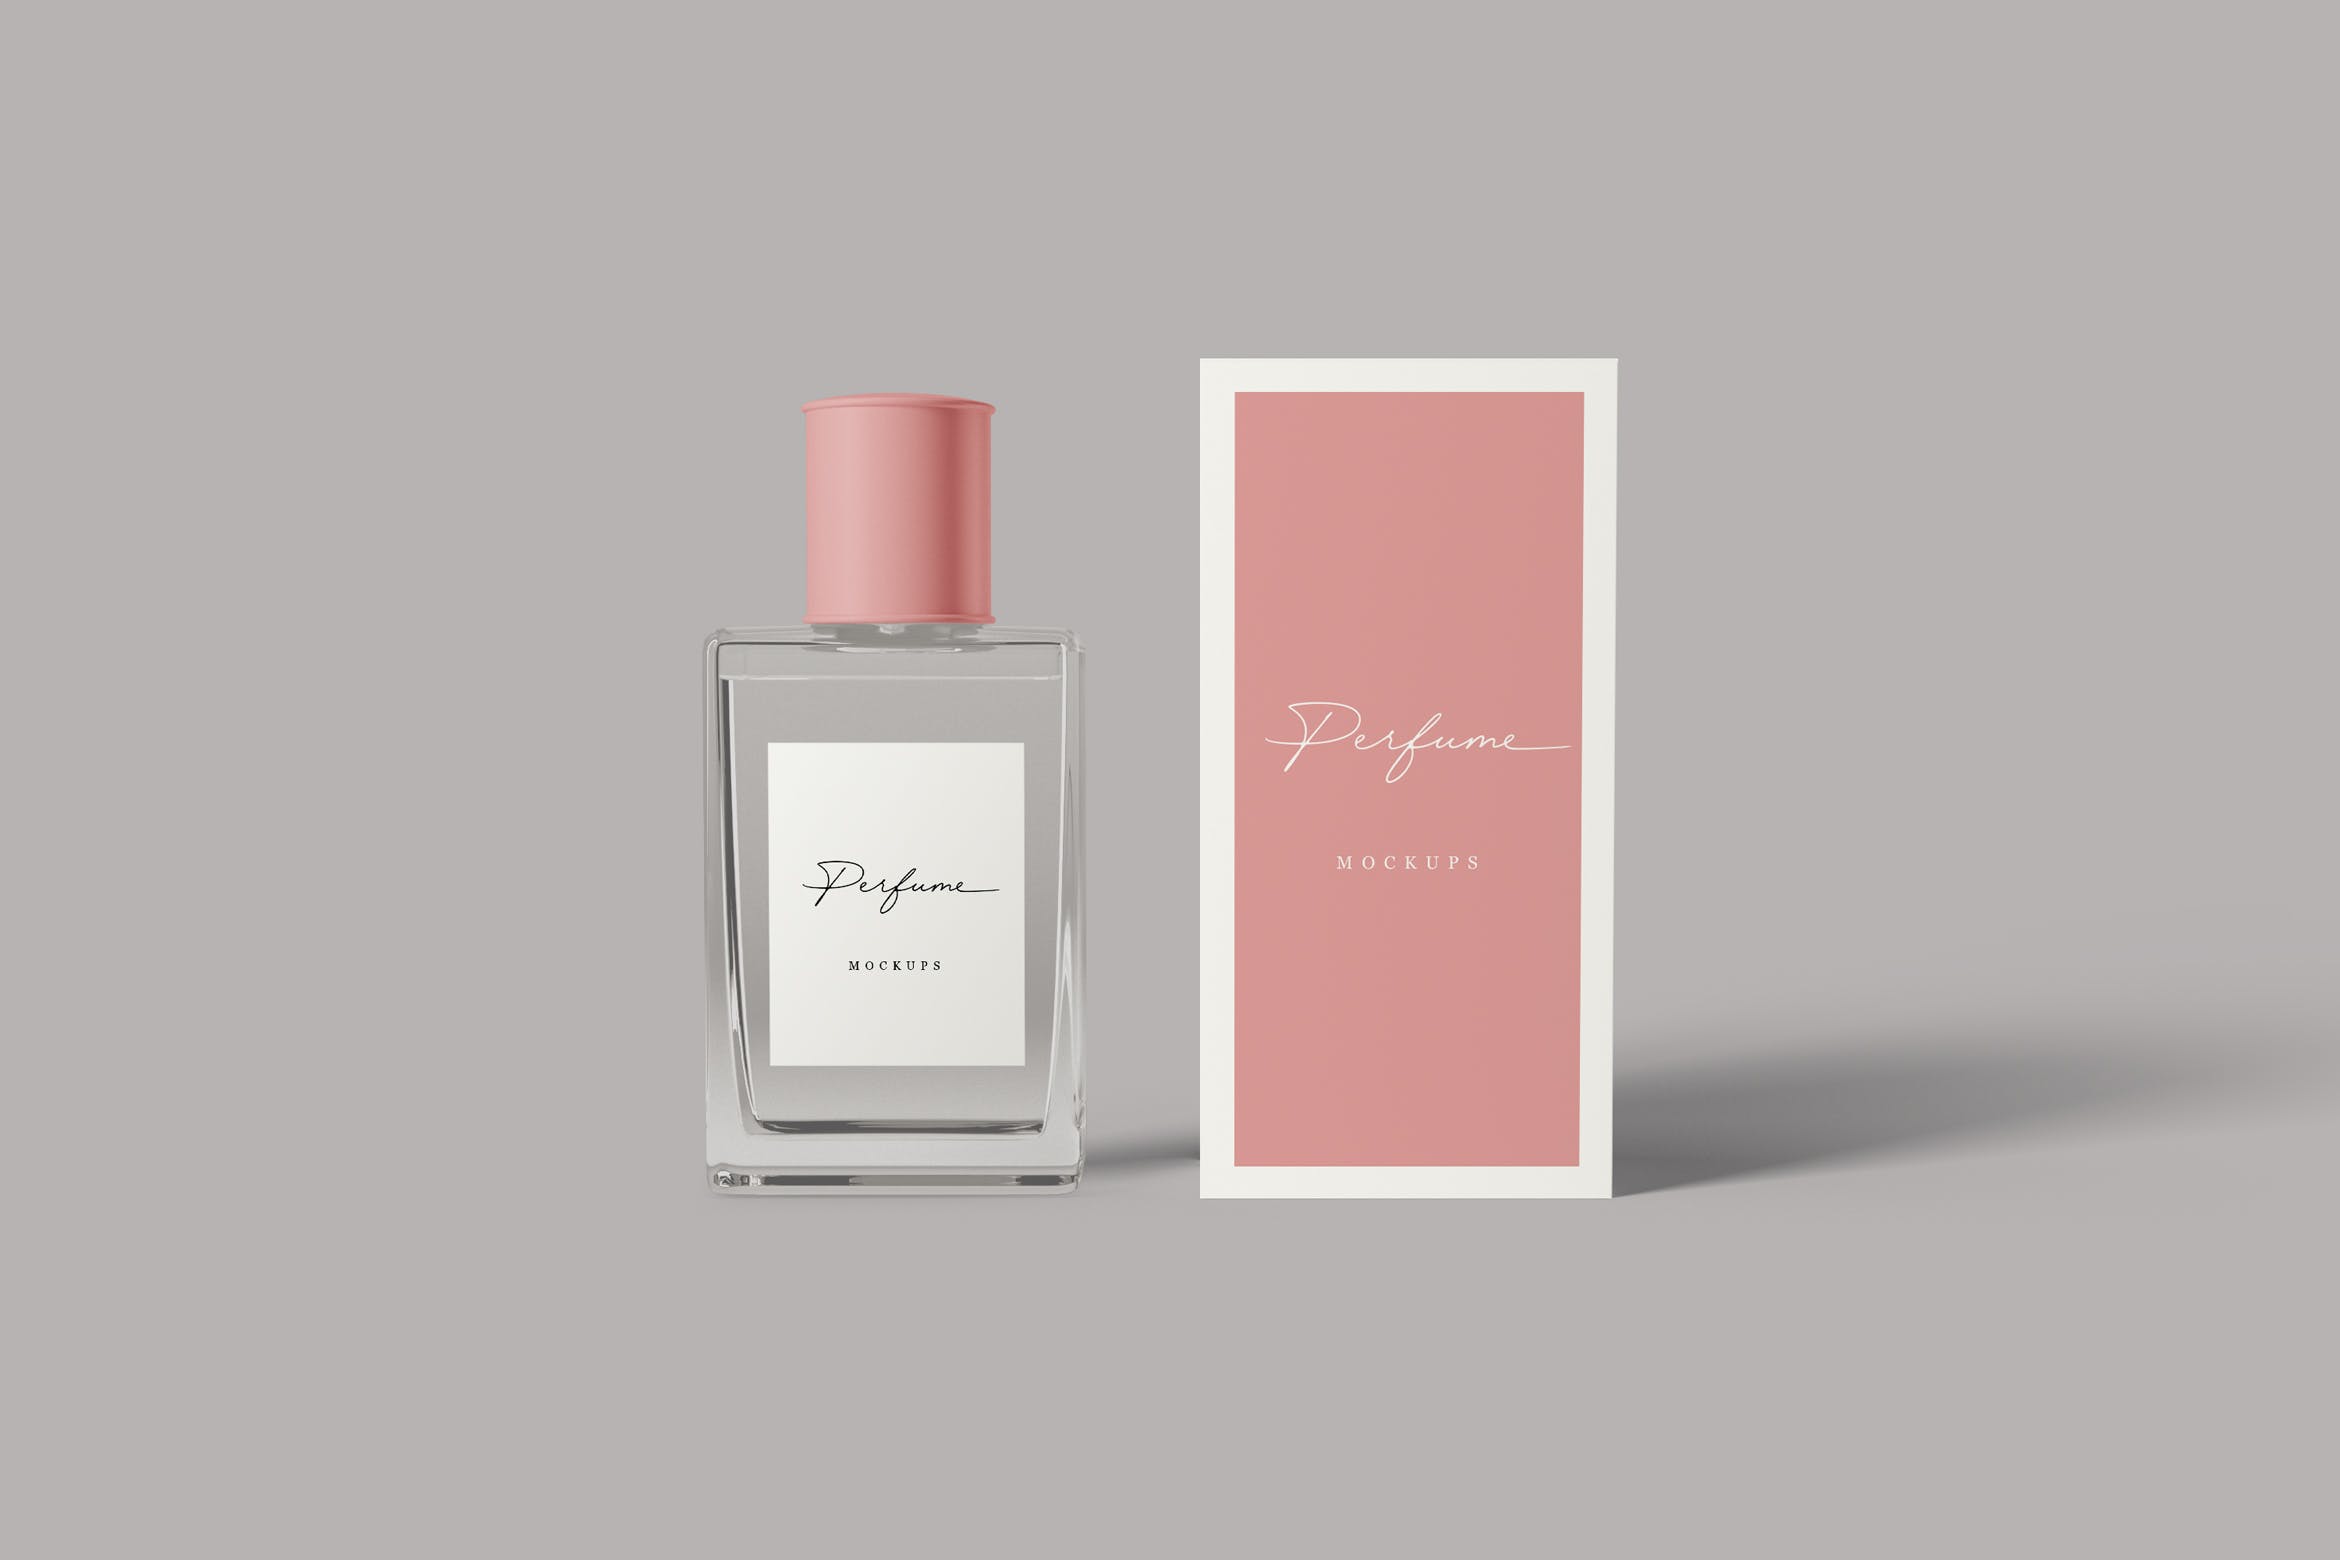 香水瓶外观设计图蚂蚁素材精选 Perfume Mockups插图